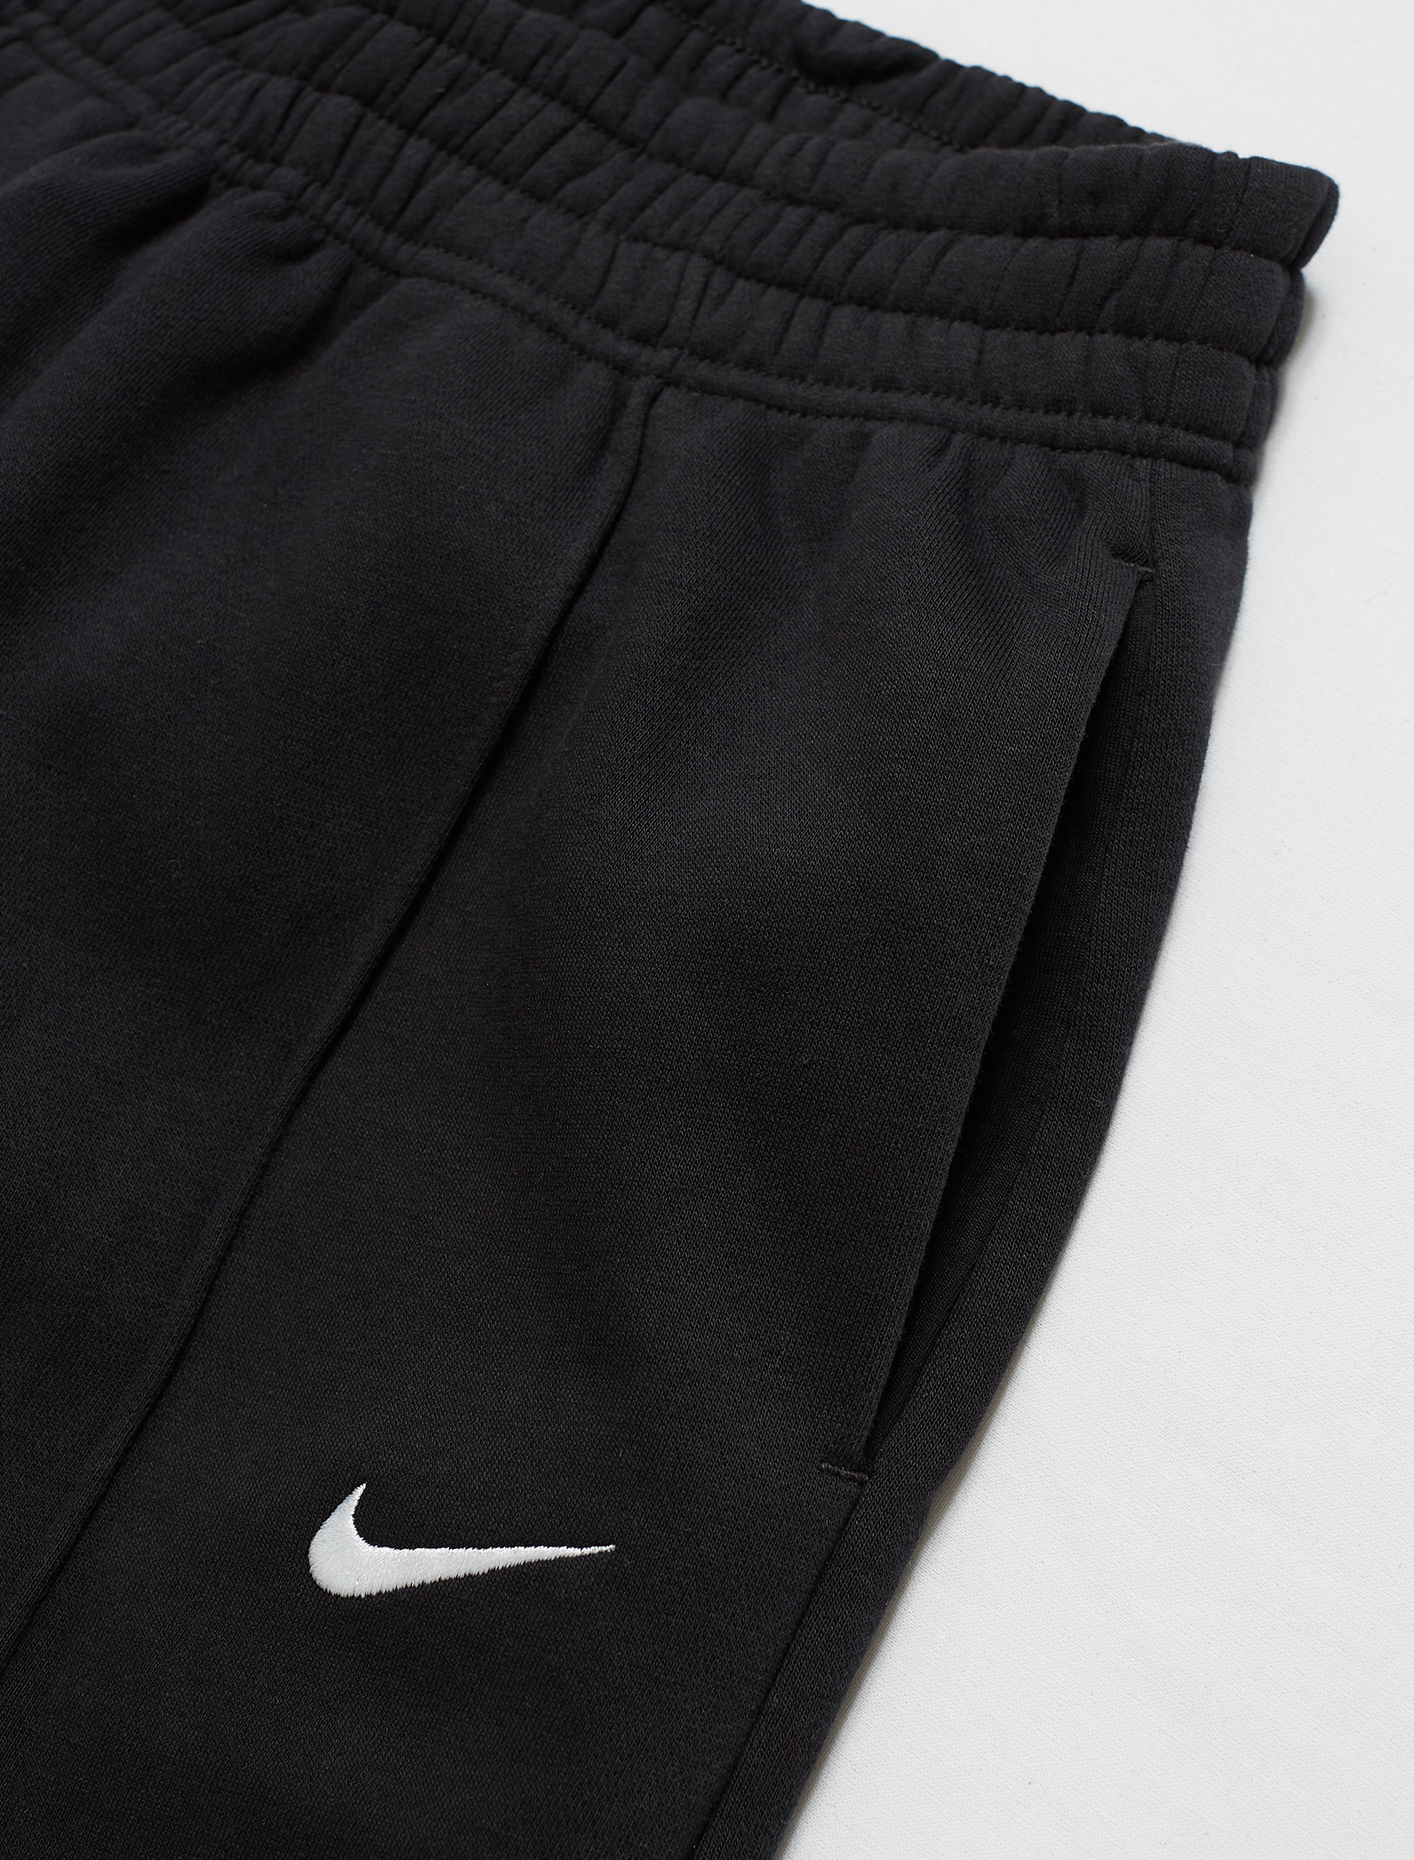 Nike Sportswear Essential Fleece Pants in Black | Voo Store Berlin ...